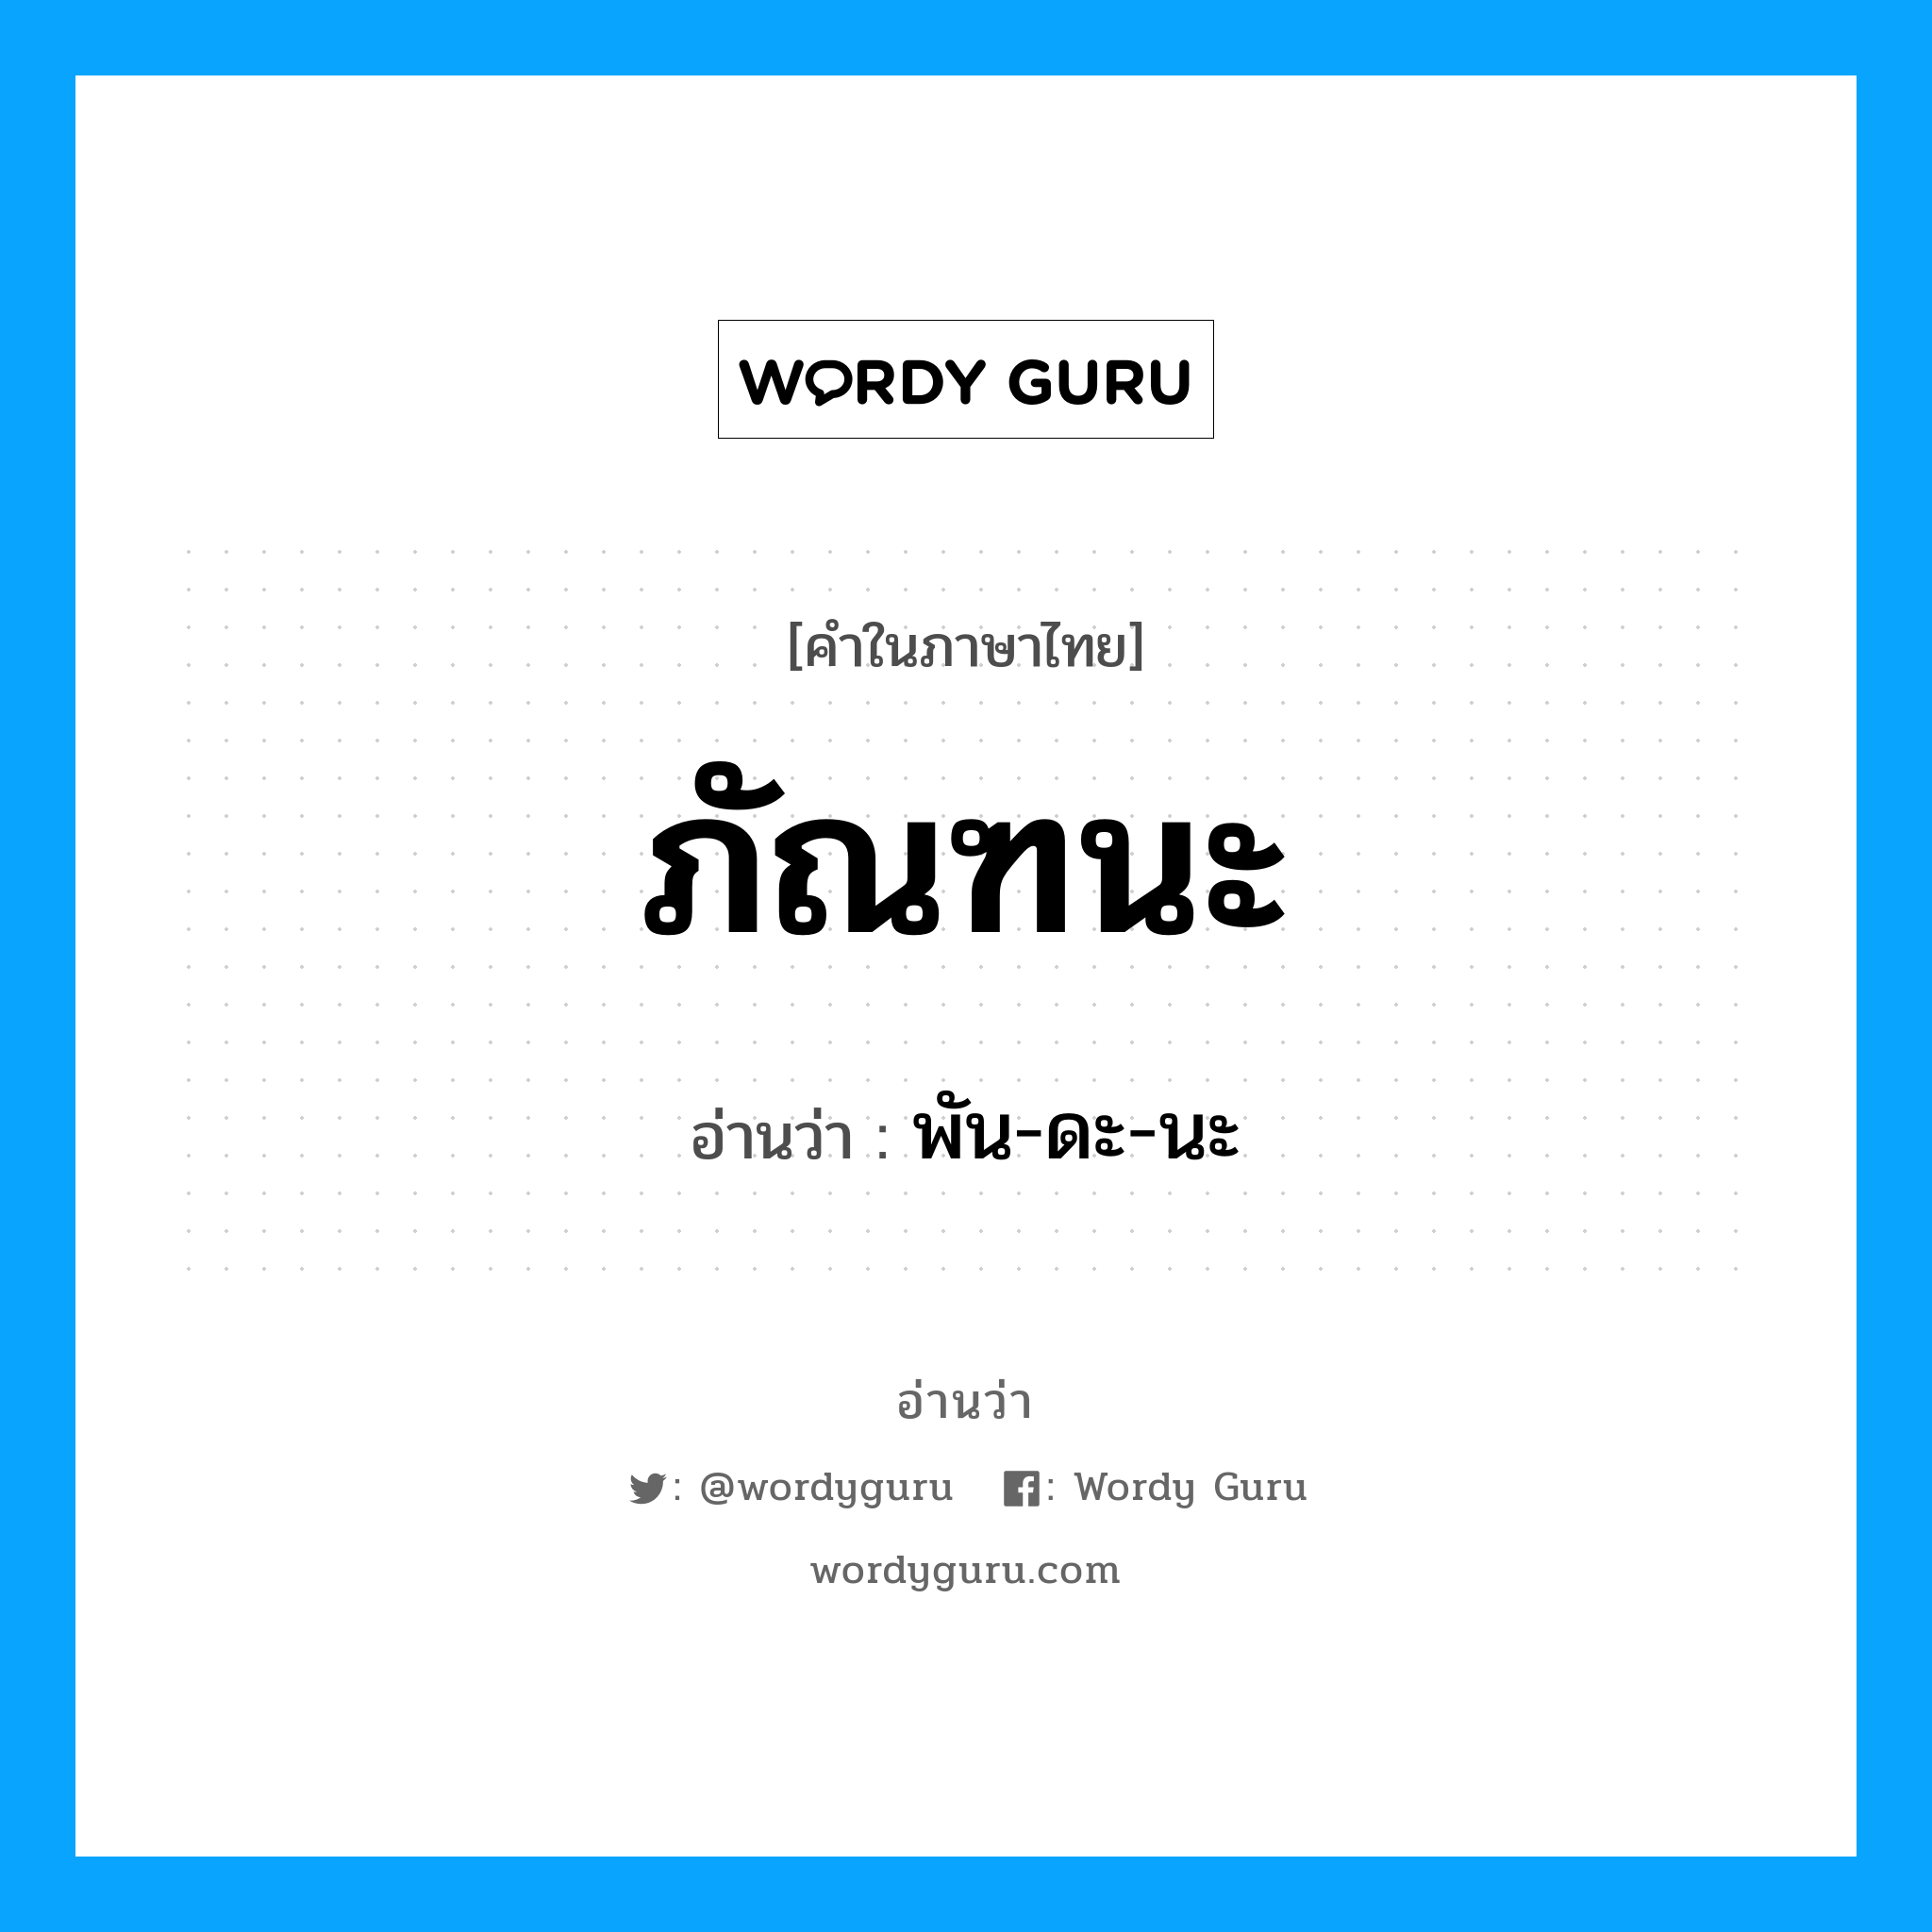 พัน-ดะ-นะ เป็นคำอ่านของคำไหน?, คำในภาษาไทย พัน-ดะ-นะ อ่านว่า ภัณฑนะ